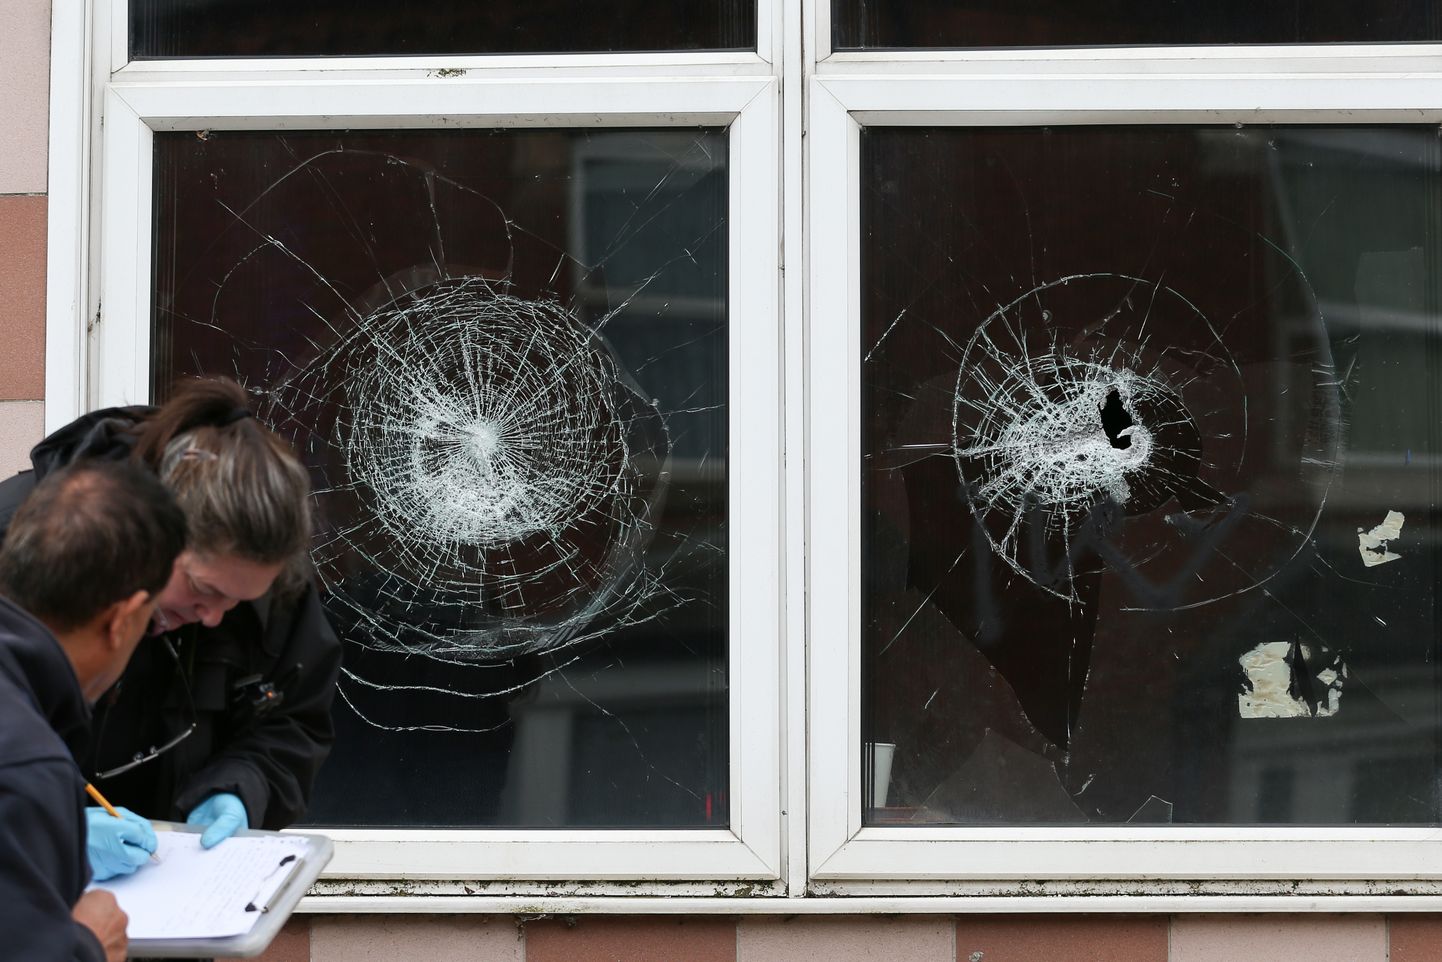 Briti politsei Birminghamis mošee juures, mille aknad vandaalid puruks lõid.